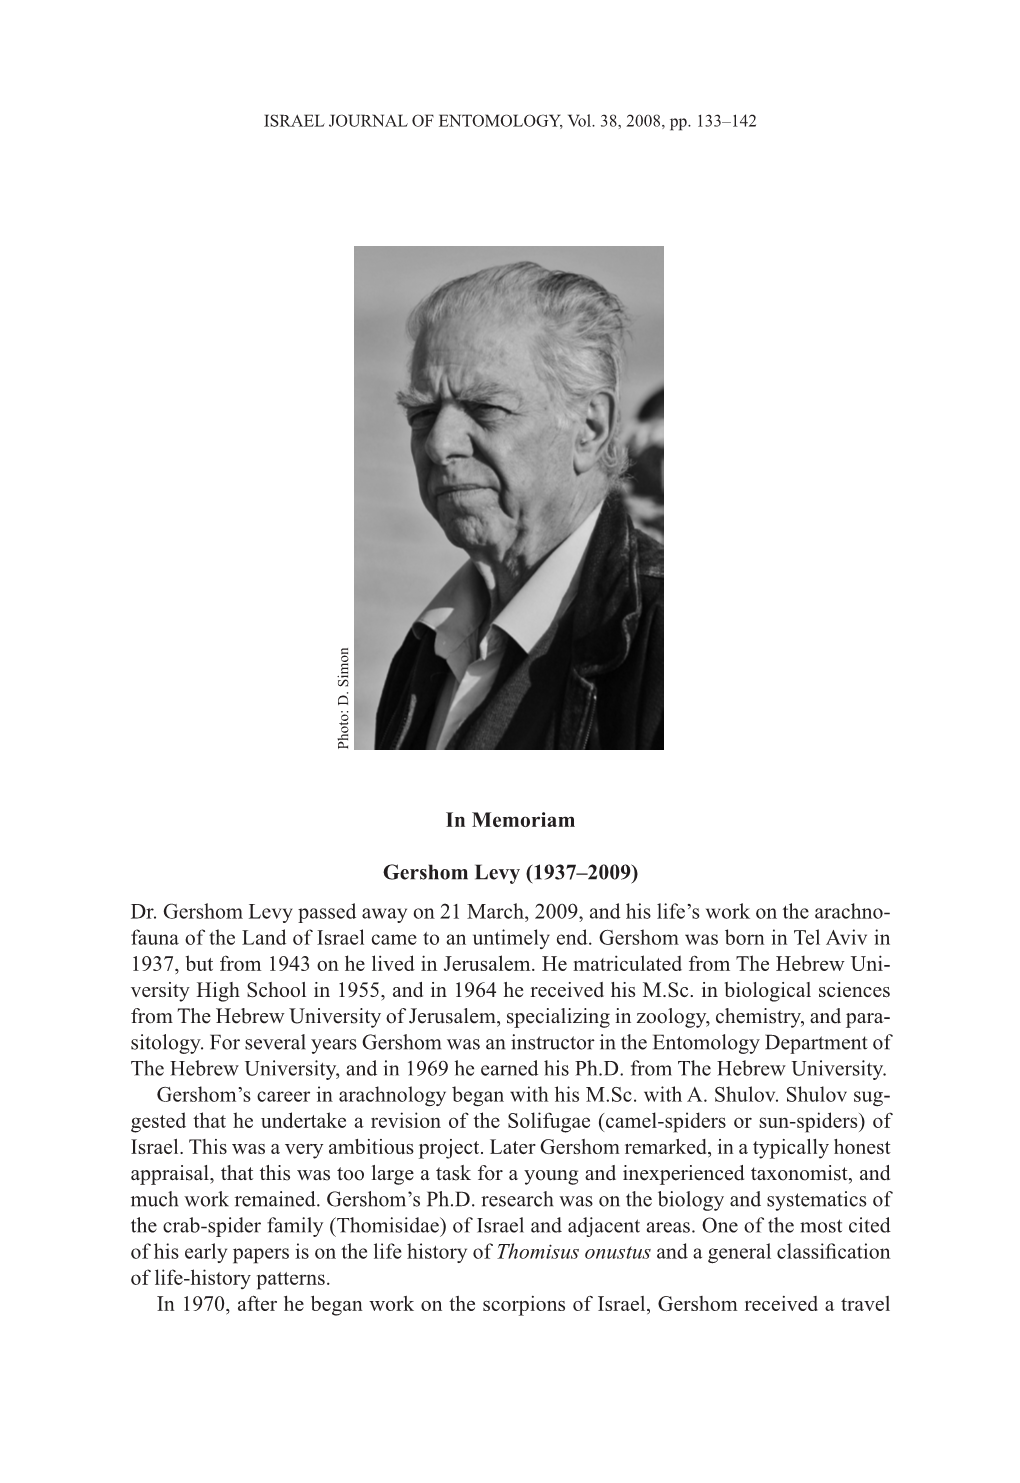 In Memoriam Gershom Levy (1937–2009) Dr. Gershom Levy Passed